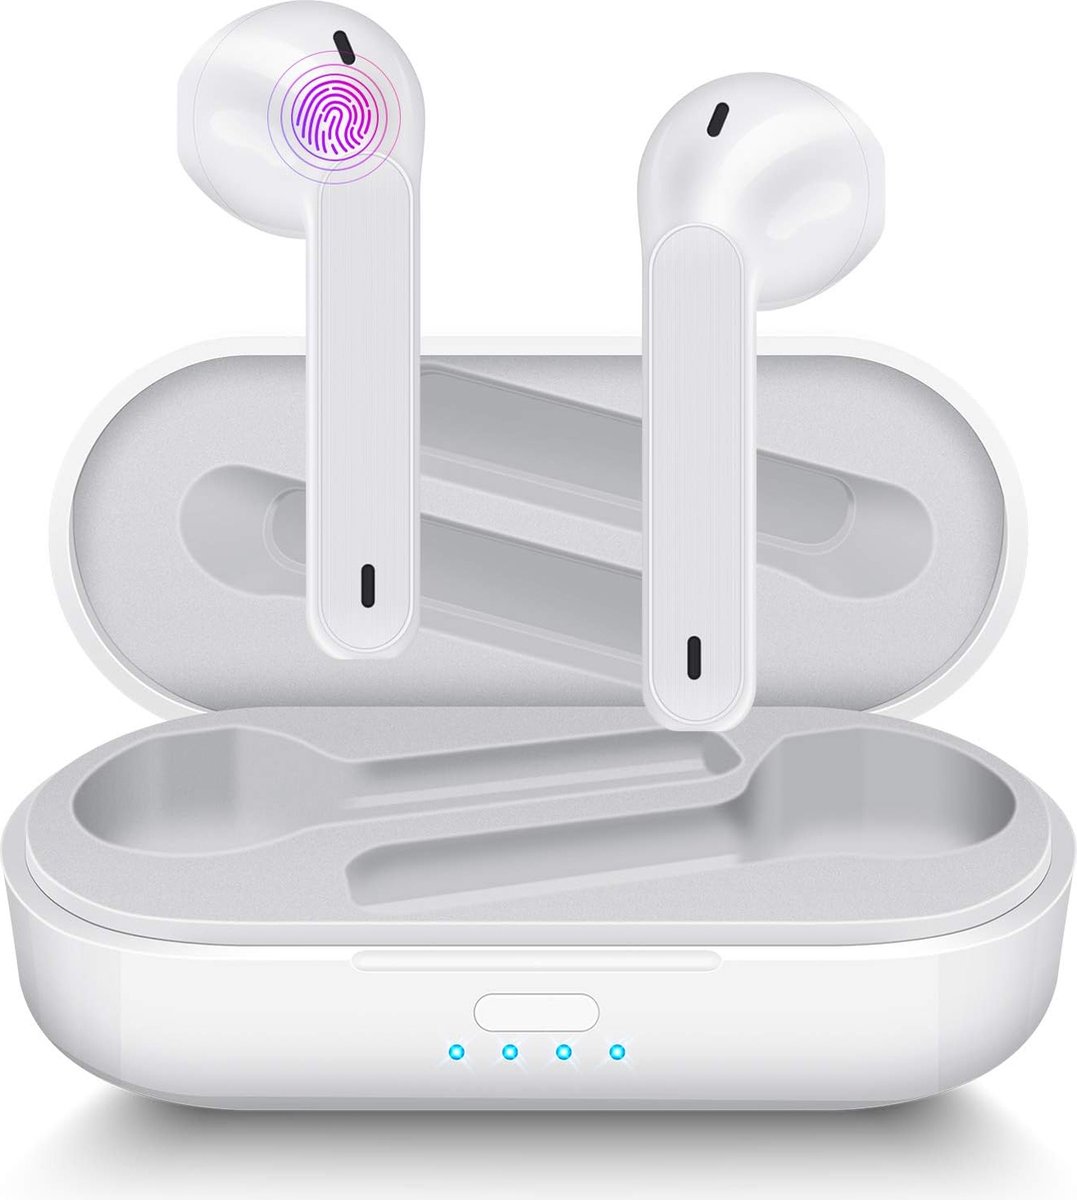 Aoslen draadloze Bluetooth 5.0 stereo-oortelefoon, IPX6 waterdicht, automatisch koppelen, voor Huawei, Xiaomi, Samsung, iPhone